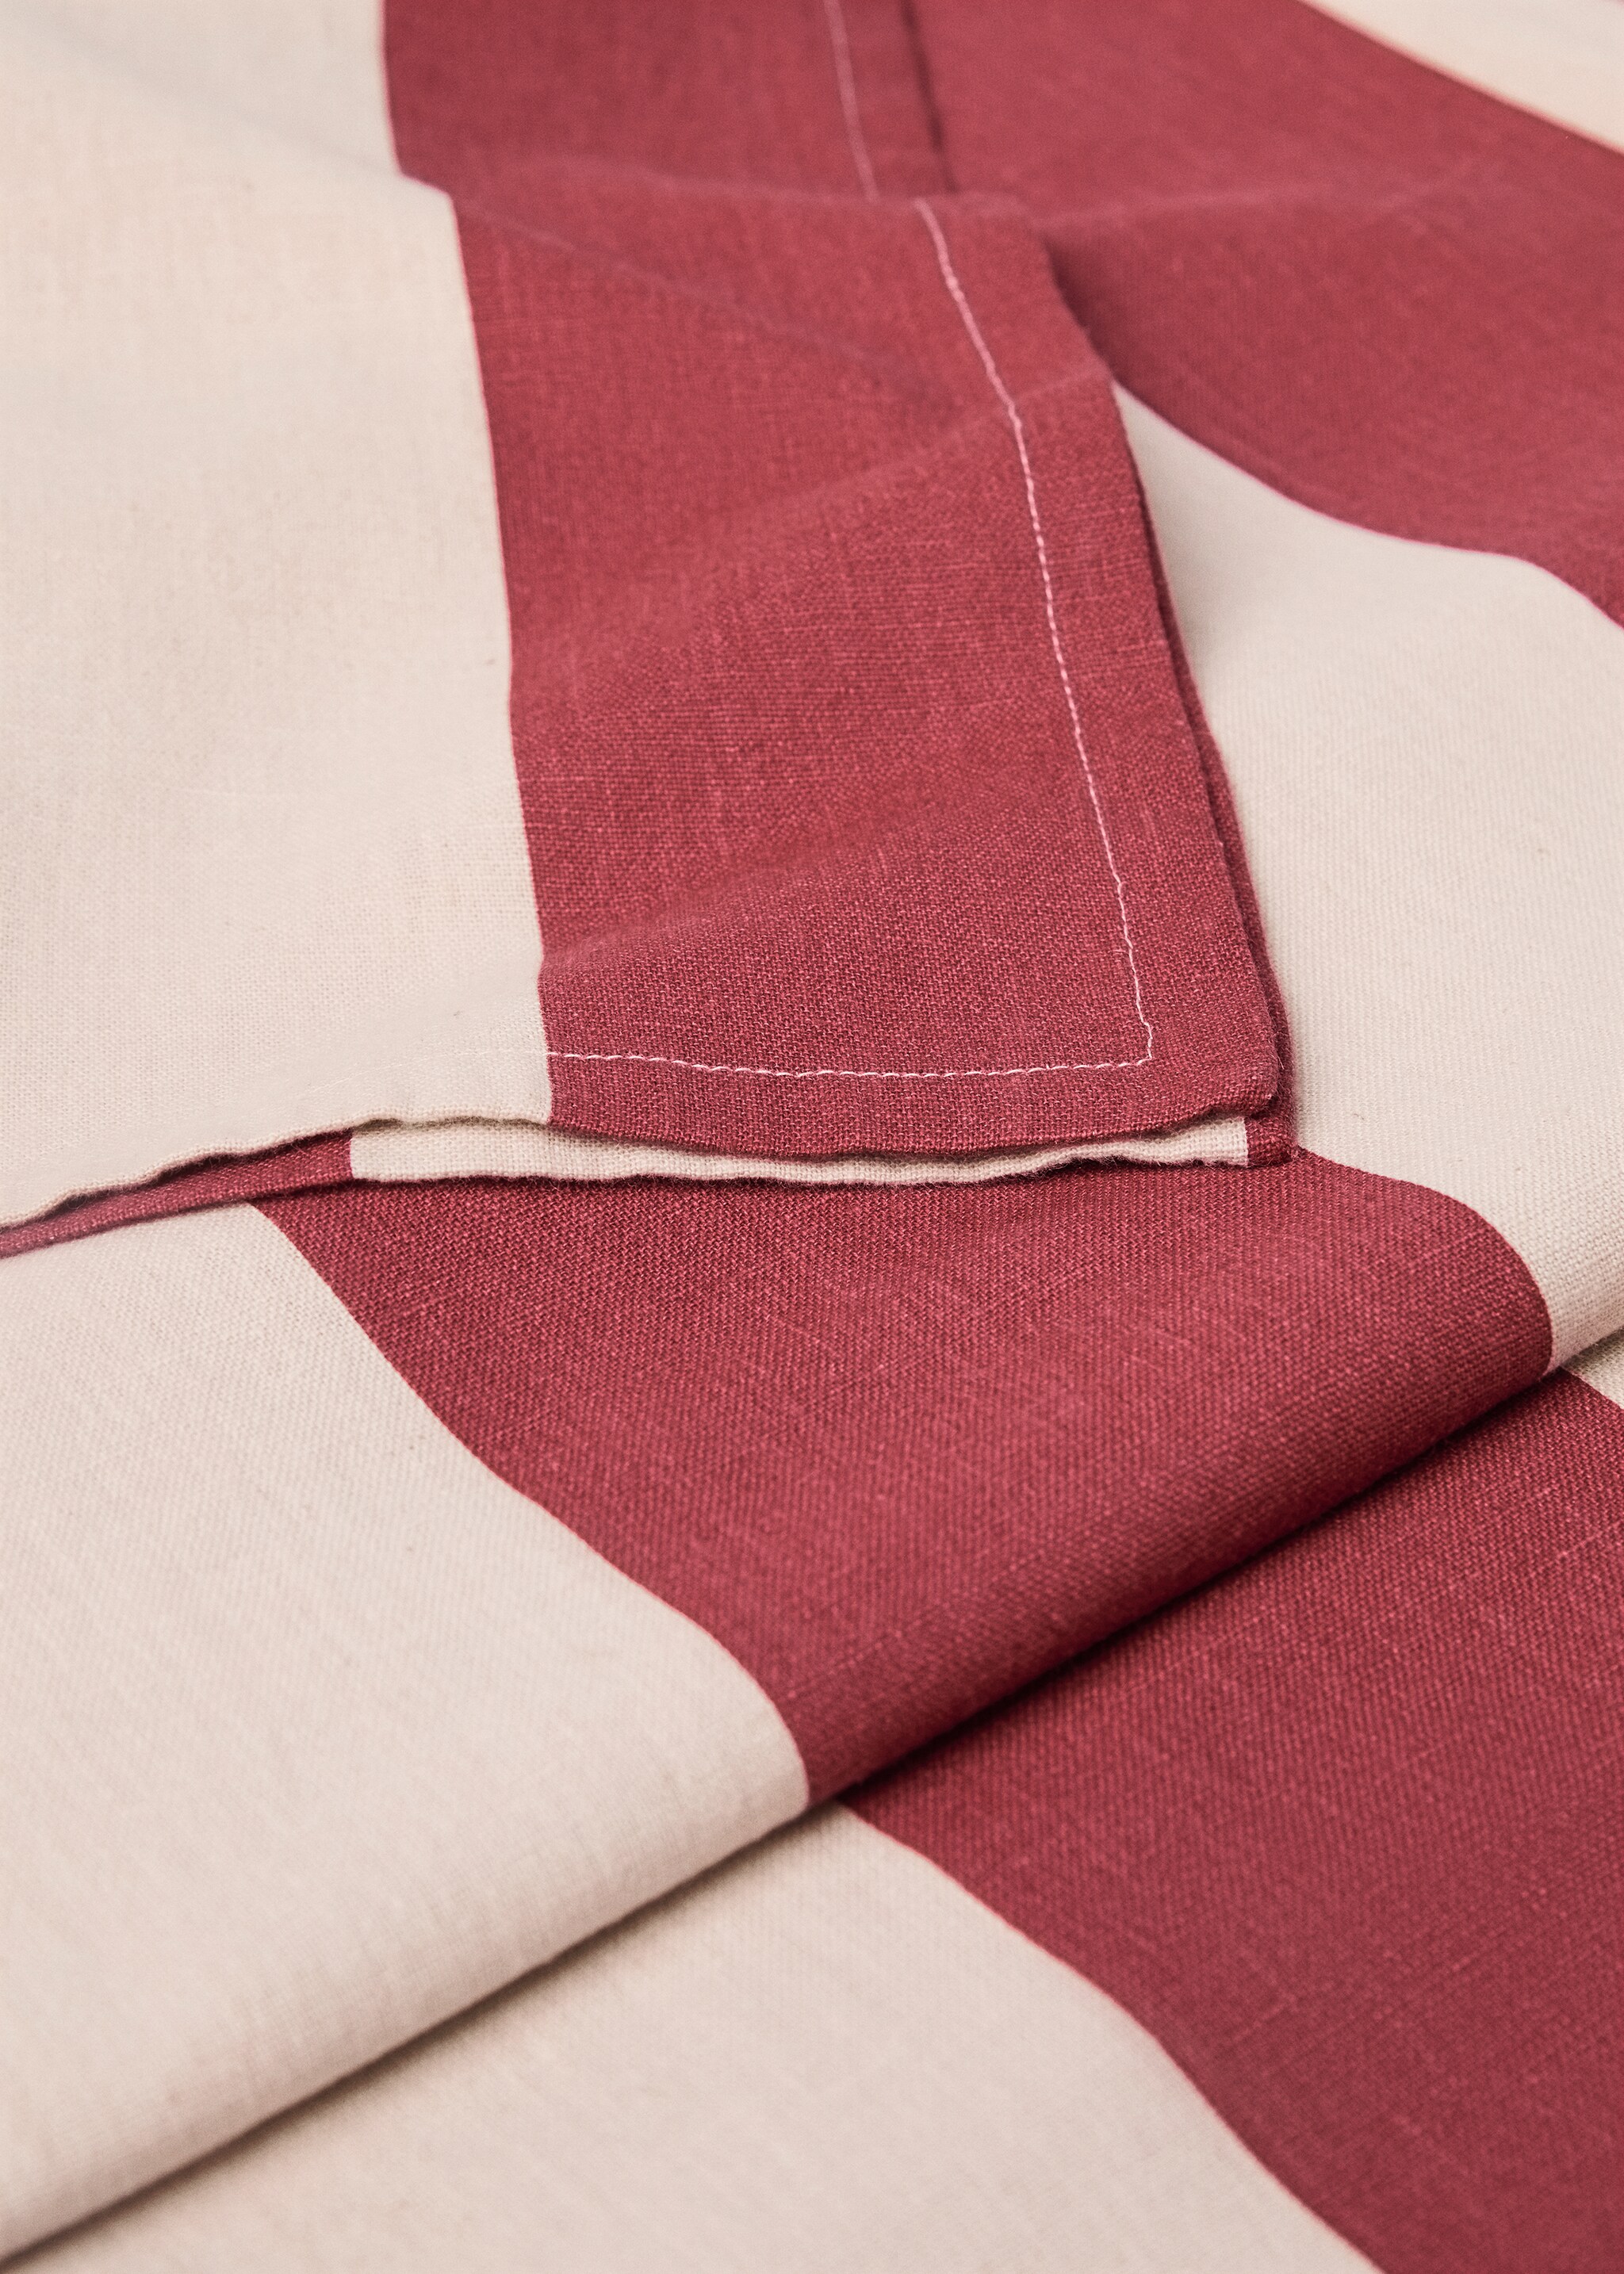 Striped cotton linen tablecloth 170x250cm - Pormenor do artigo 1